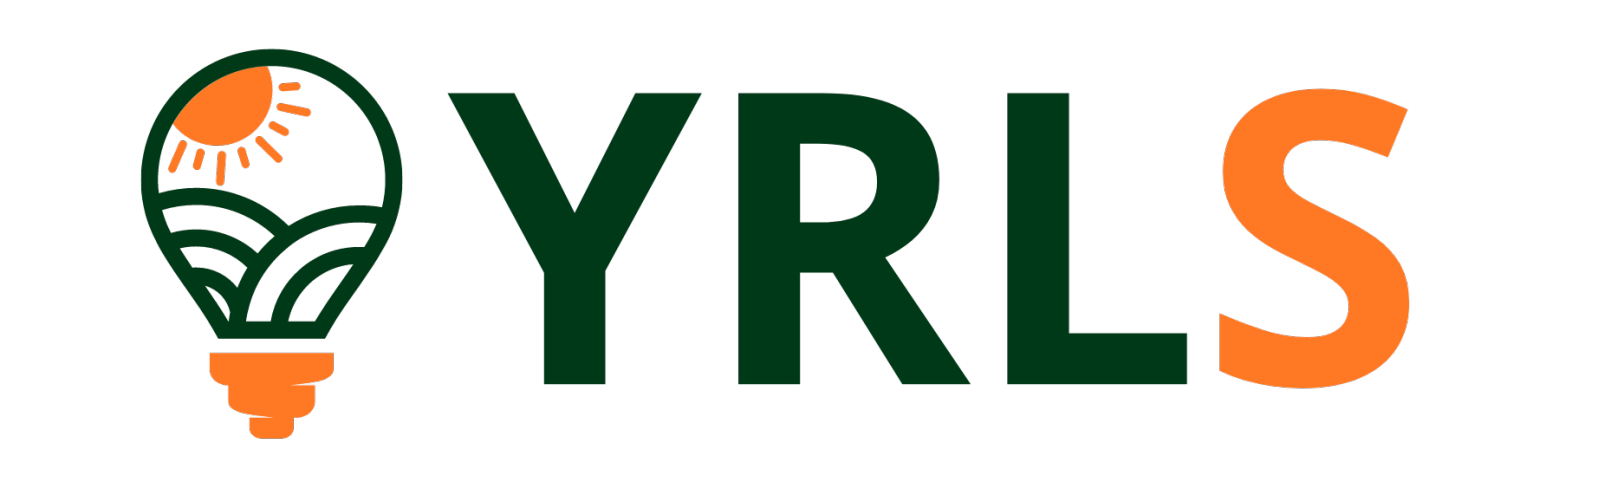 YRLS logo